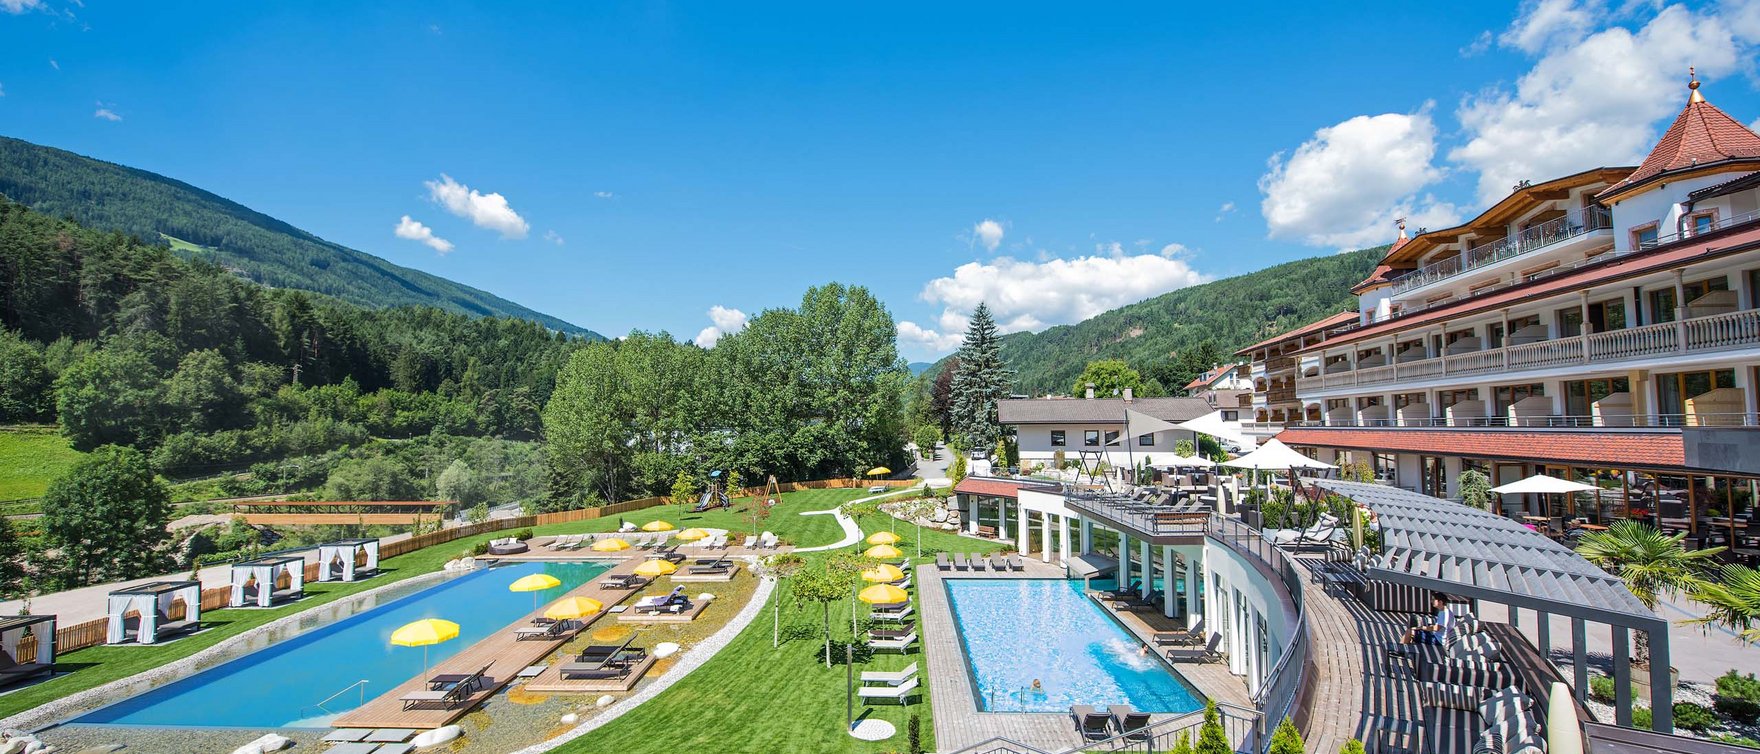 Familienhotel in Südtirol: Bei uns ist der Gast König.